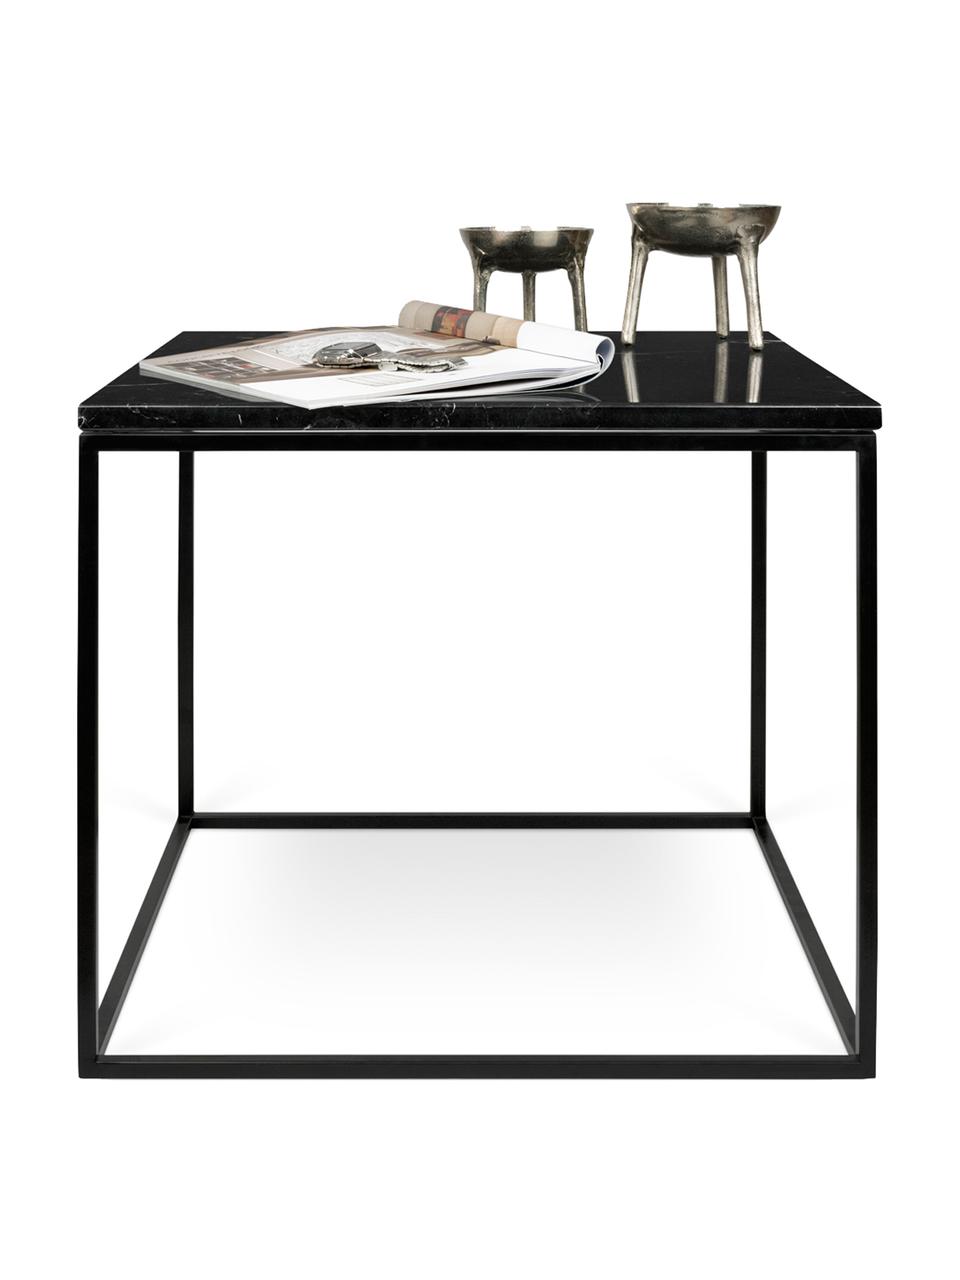 Marmor-Beistelltisch Gleam, Tischplatte: Marmor, Gestell: Stahl, lackiert, Tischplatte: Schwarz, marmoriert<br>Gestell: Schwarz, 50 x 45 cm